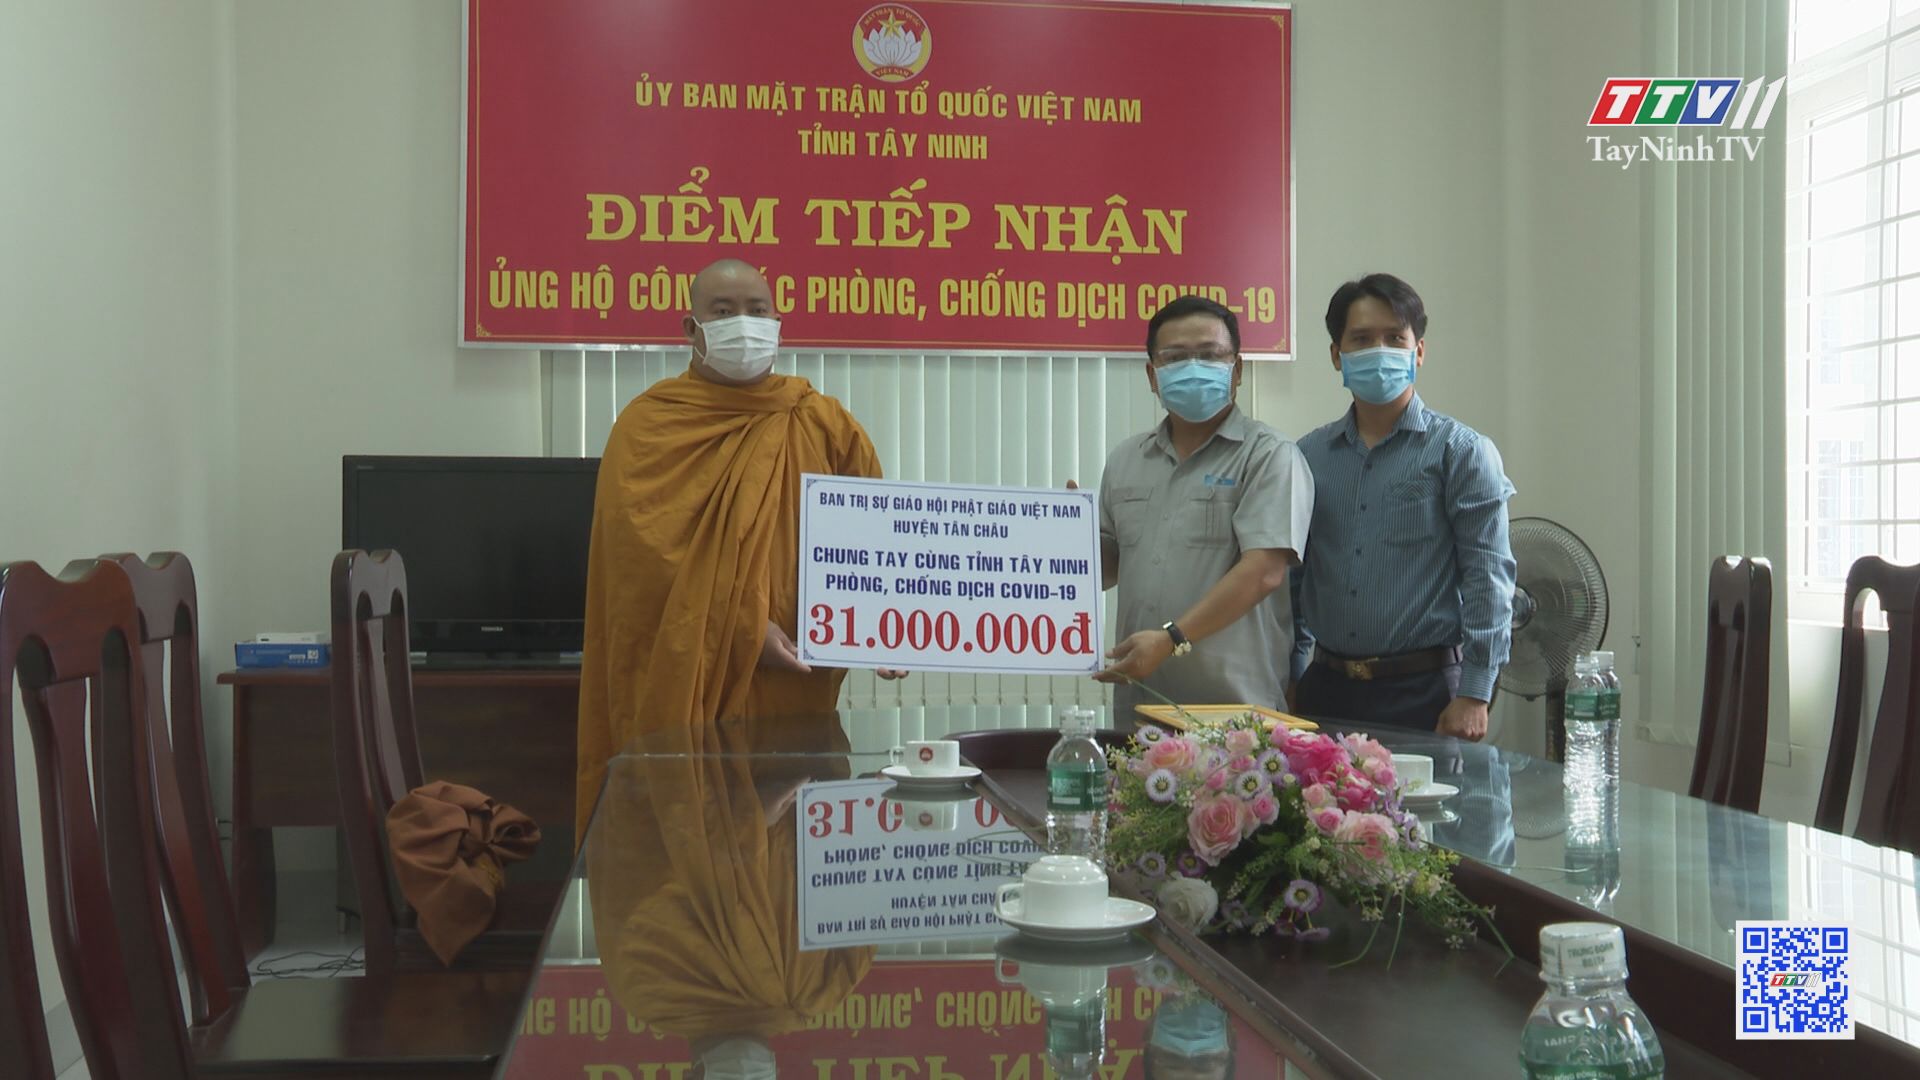 Các tổ chức tôn giáo trên địa bàn tỉnh Tây Ninh thực hiện nghiêm túc các biện pháp phòng, chống dịch | PHÁP LUẬT VÀ ĐỜI SỐNG | TayNinhTV